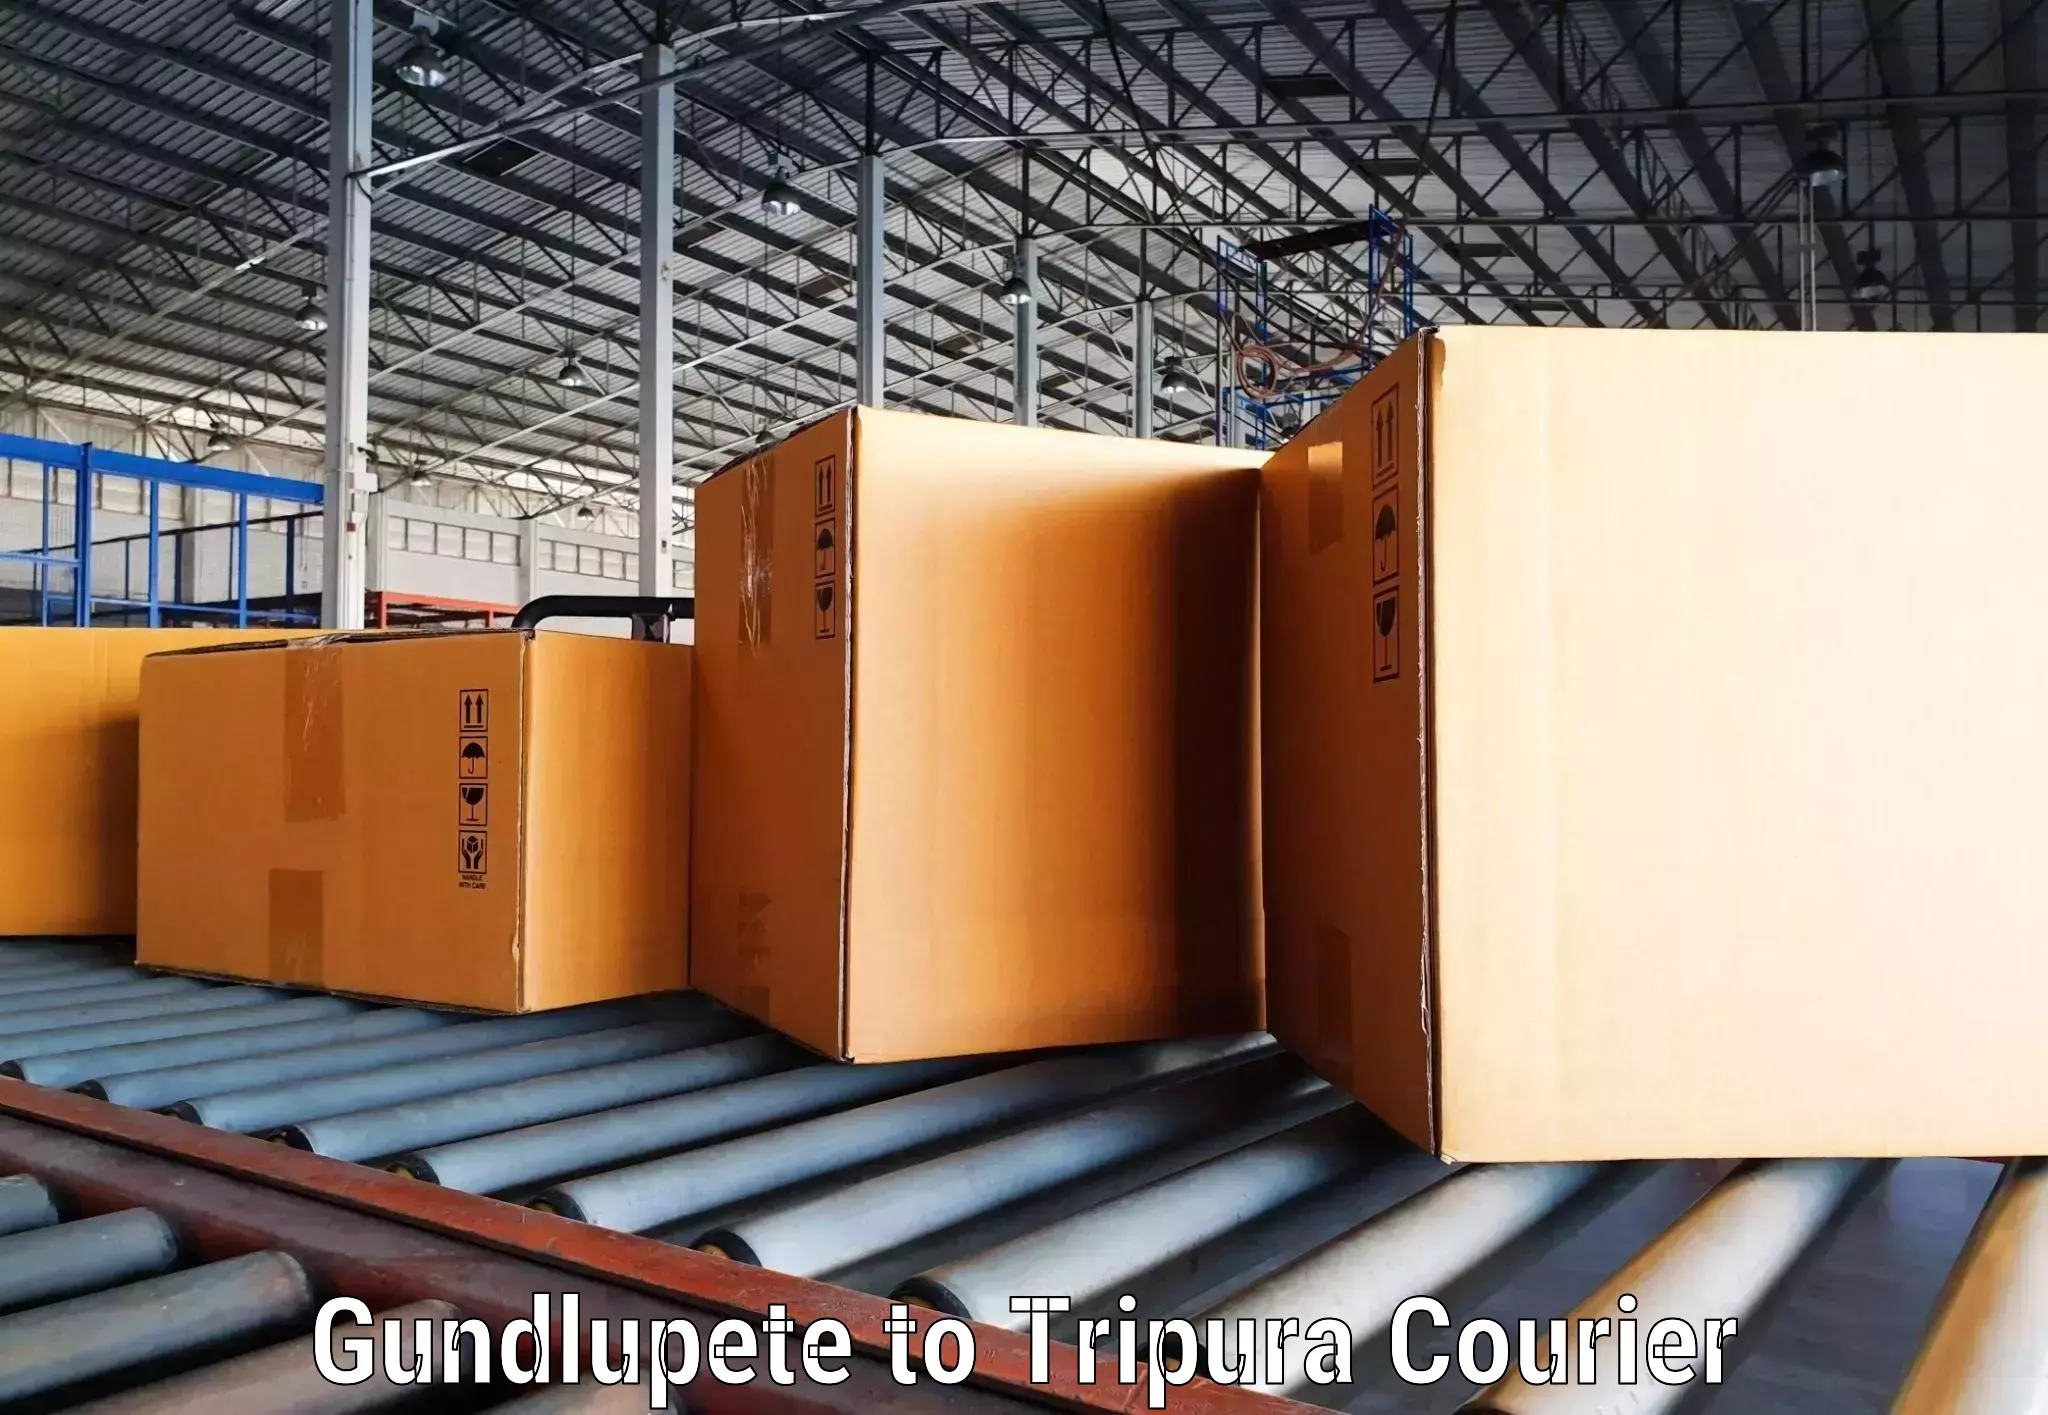 Next-generation courier services Gundlupete to Agartala